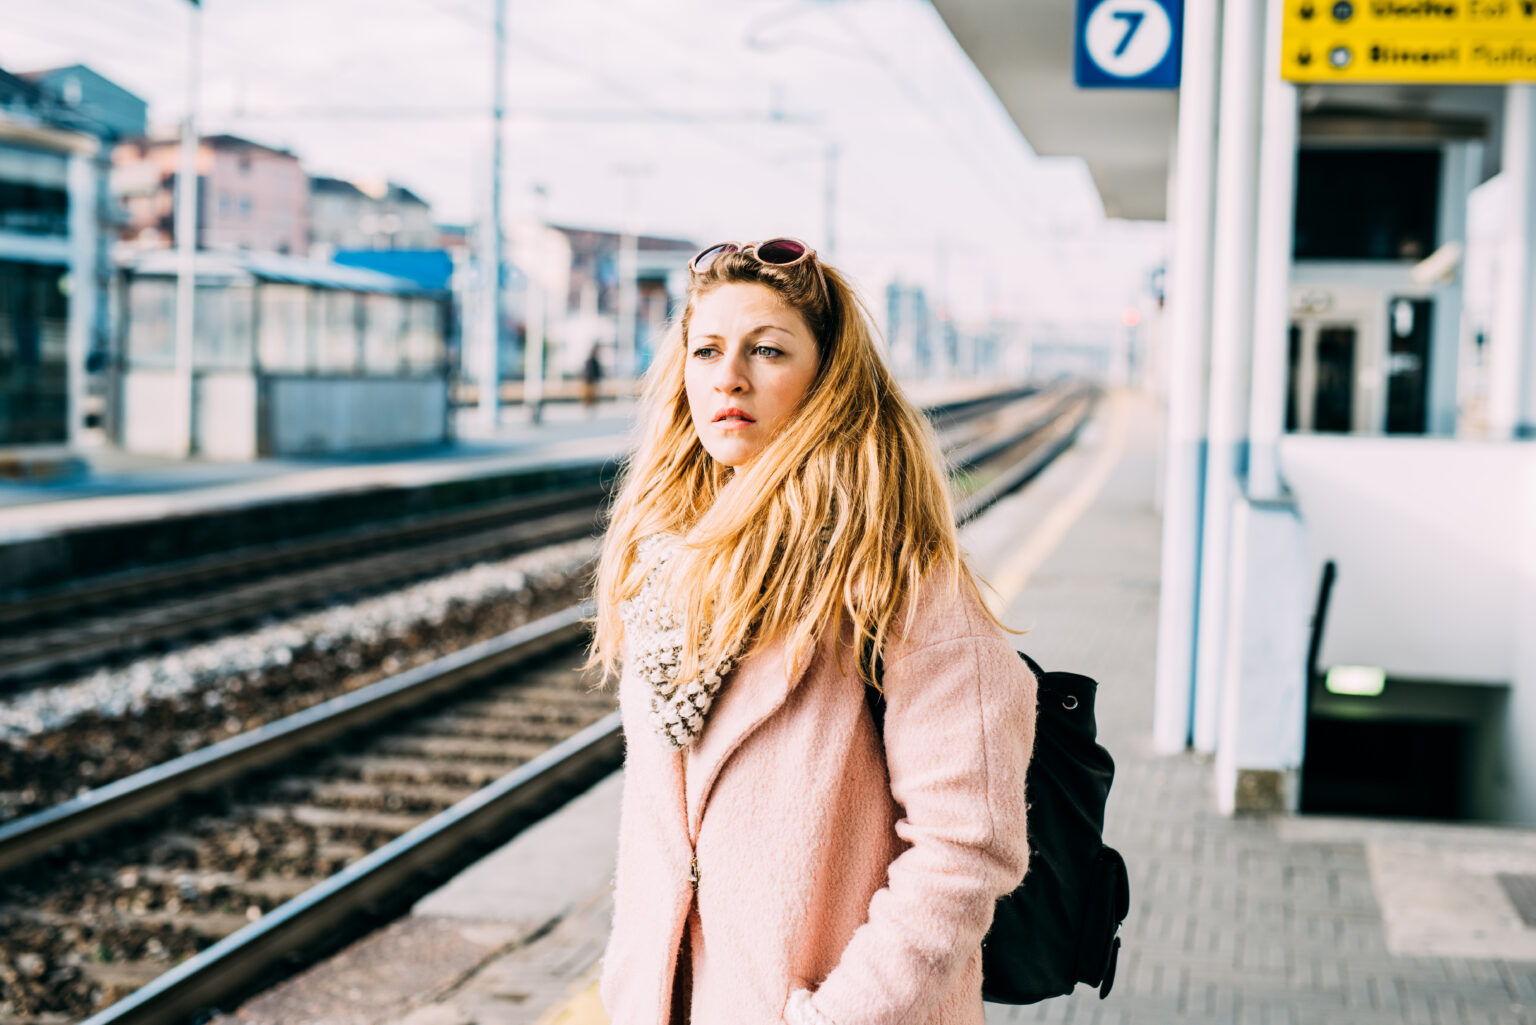 Frau mit einem rosa Mantel und blonden langen Haaren steht an einem Bahnsteig